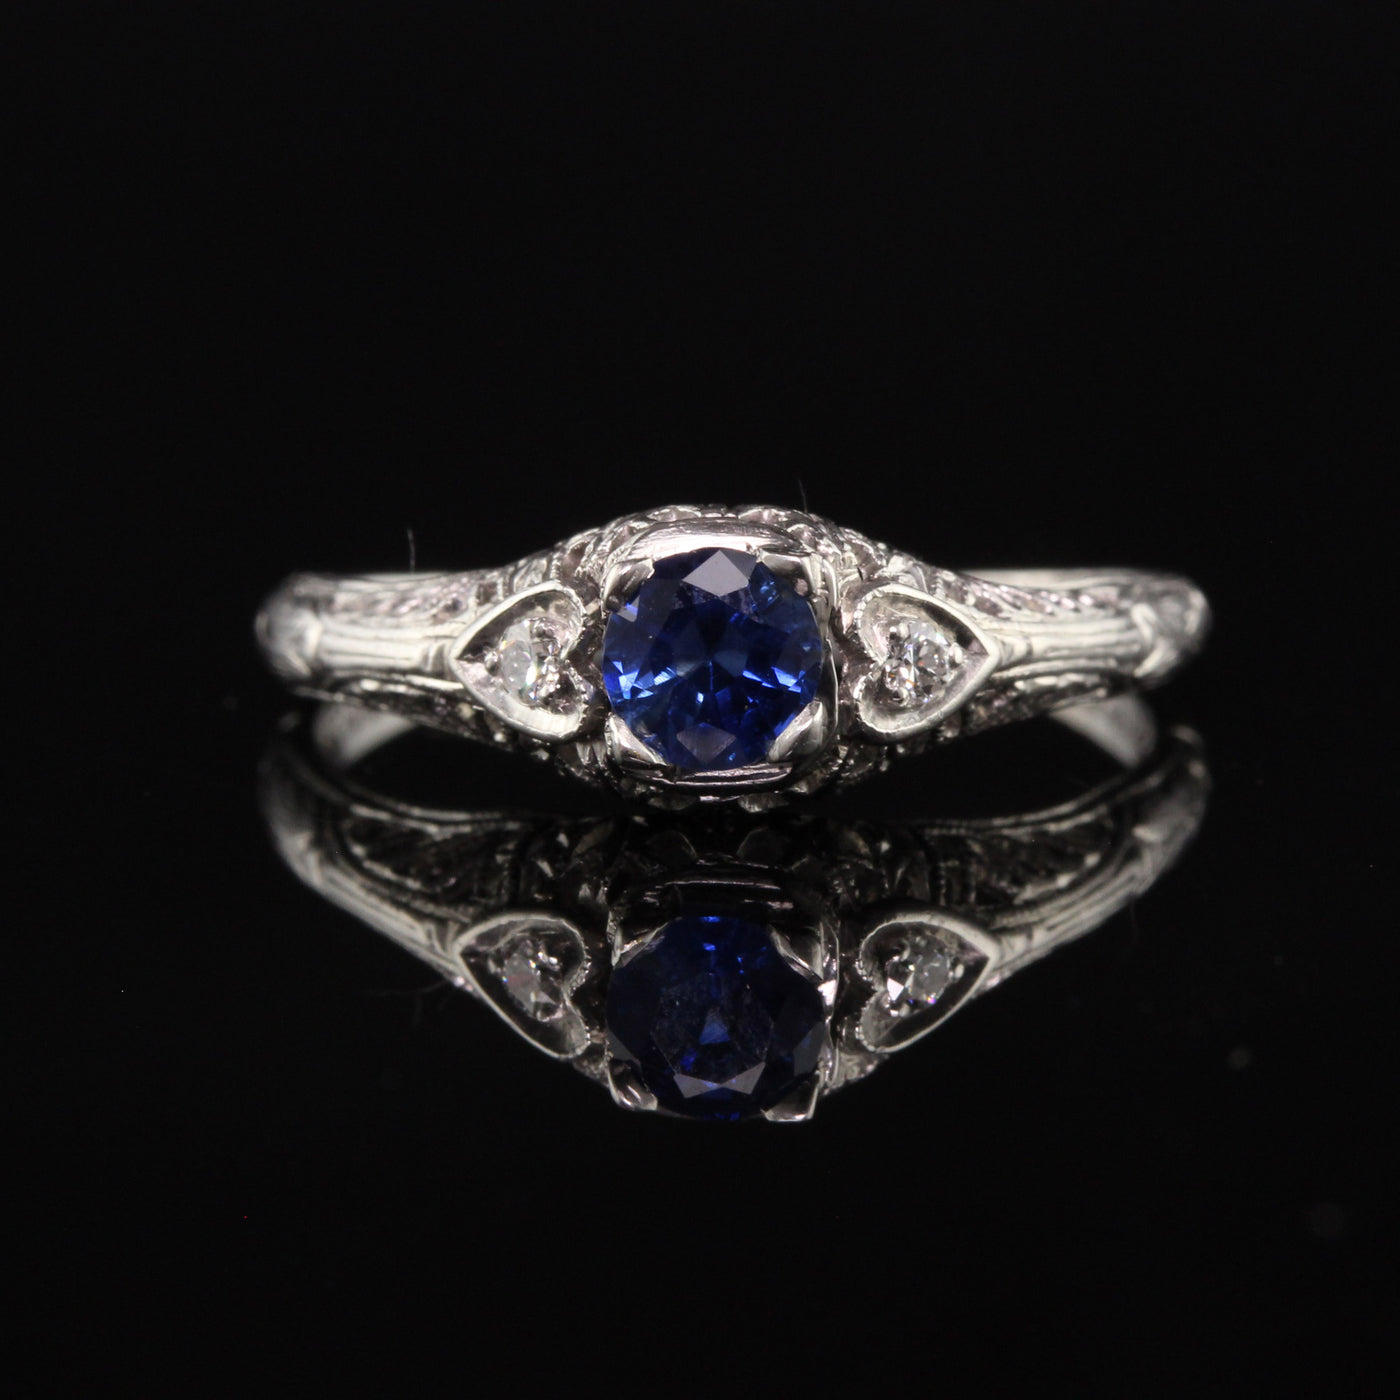 Antique Art Deco Platinum Sapphire and Diamond Engagement Ring